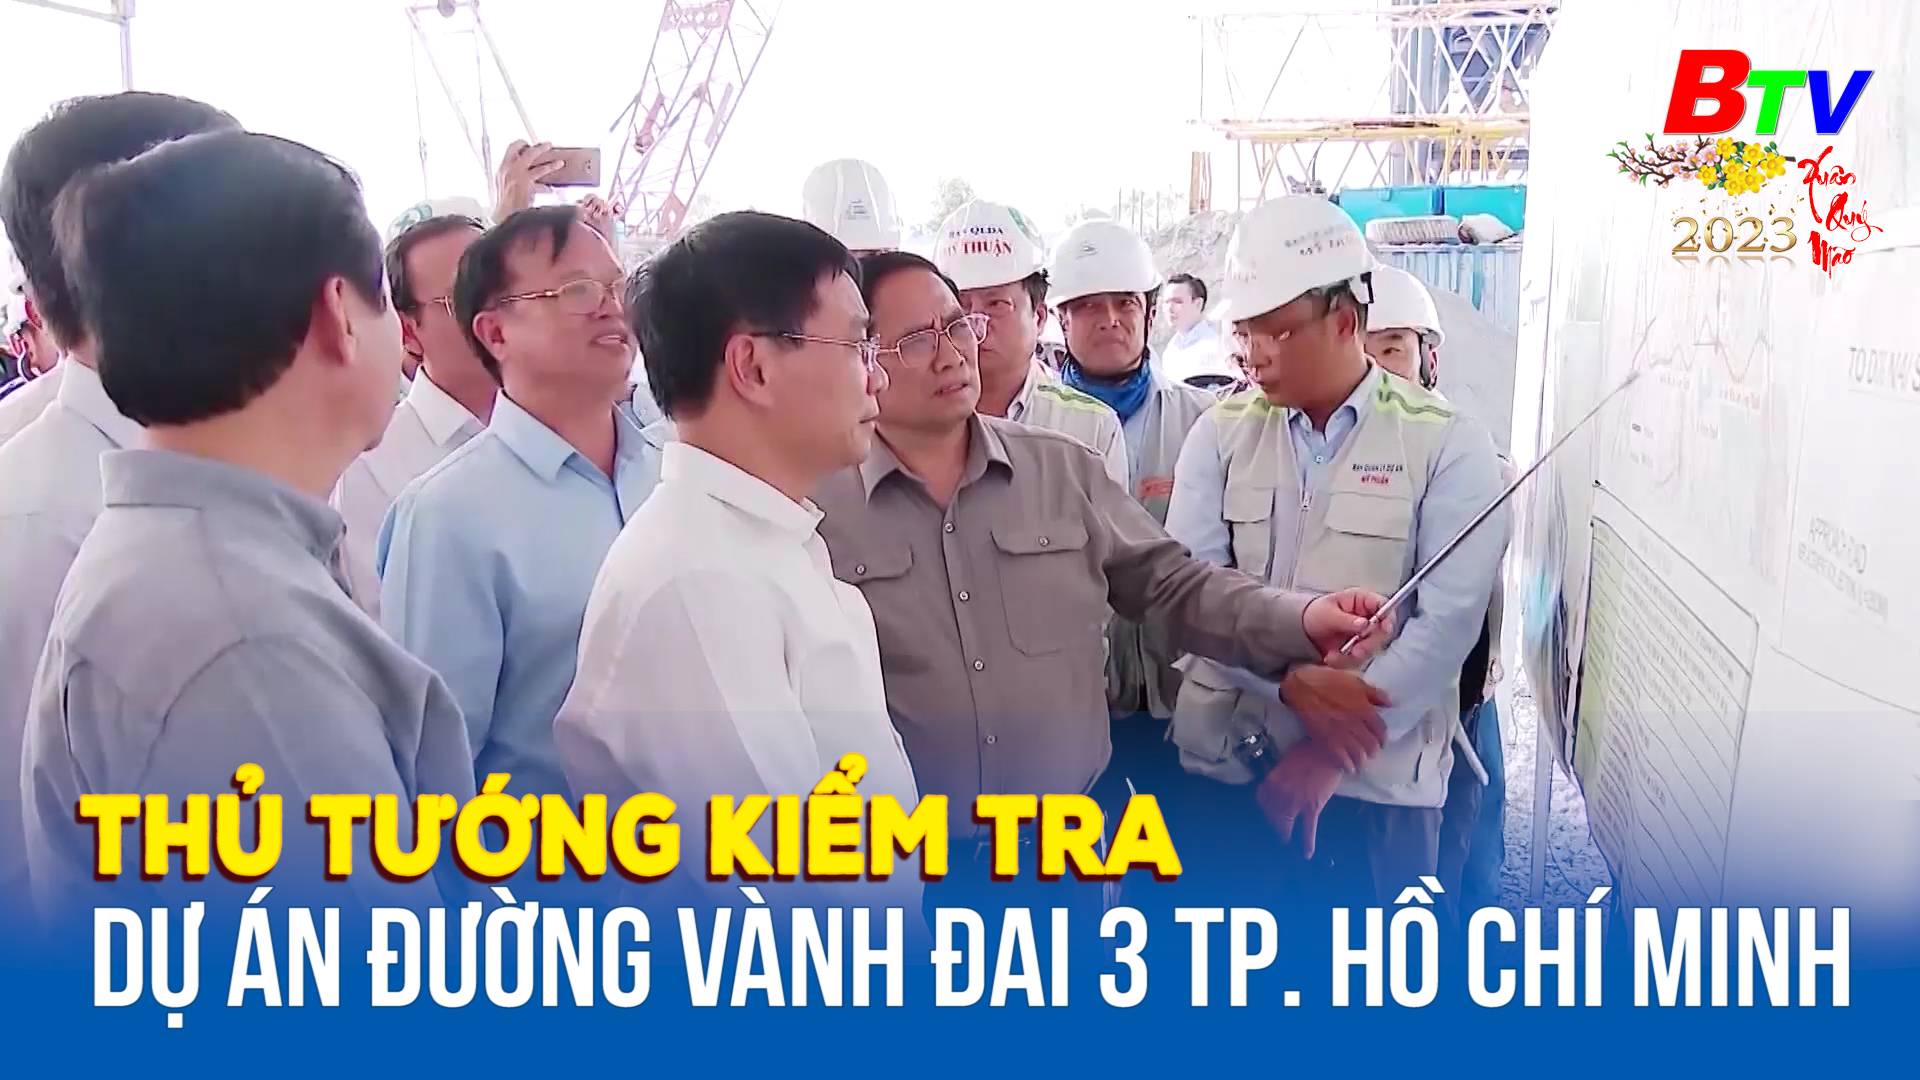 Thủ tướng kiểm tra dự án đường vành đai 3 Tp. Hồ Chí Minh